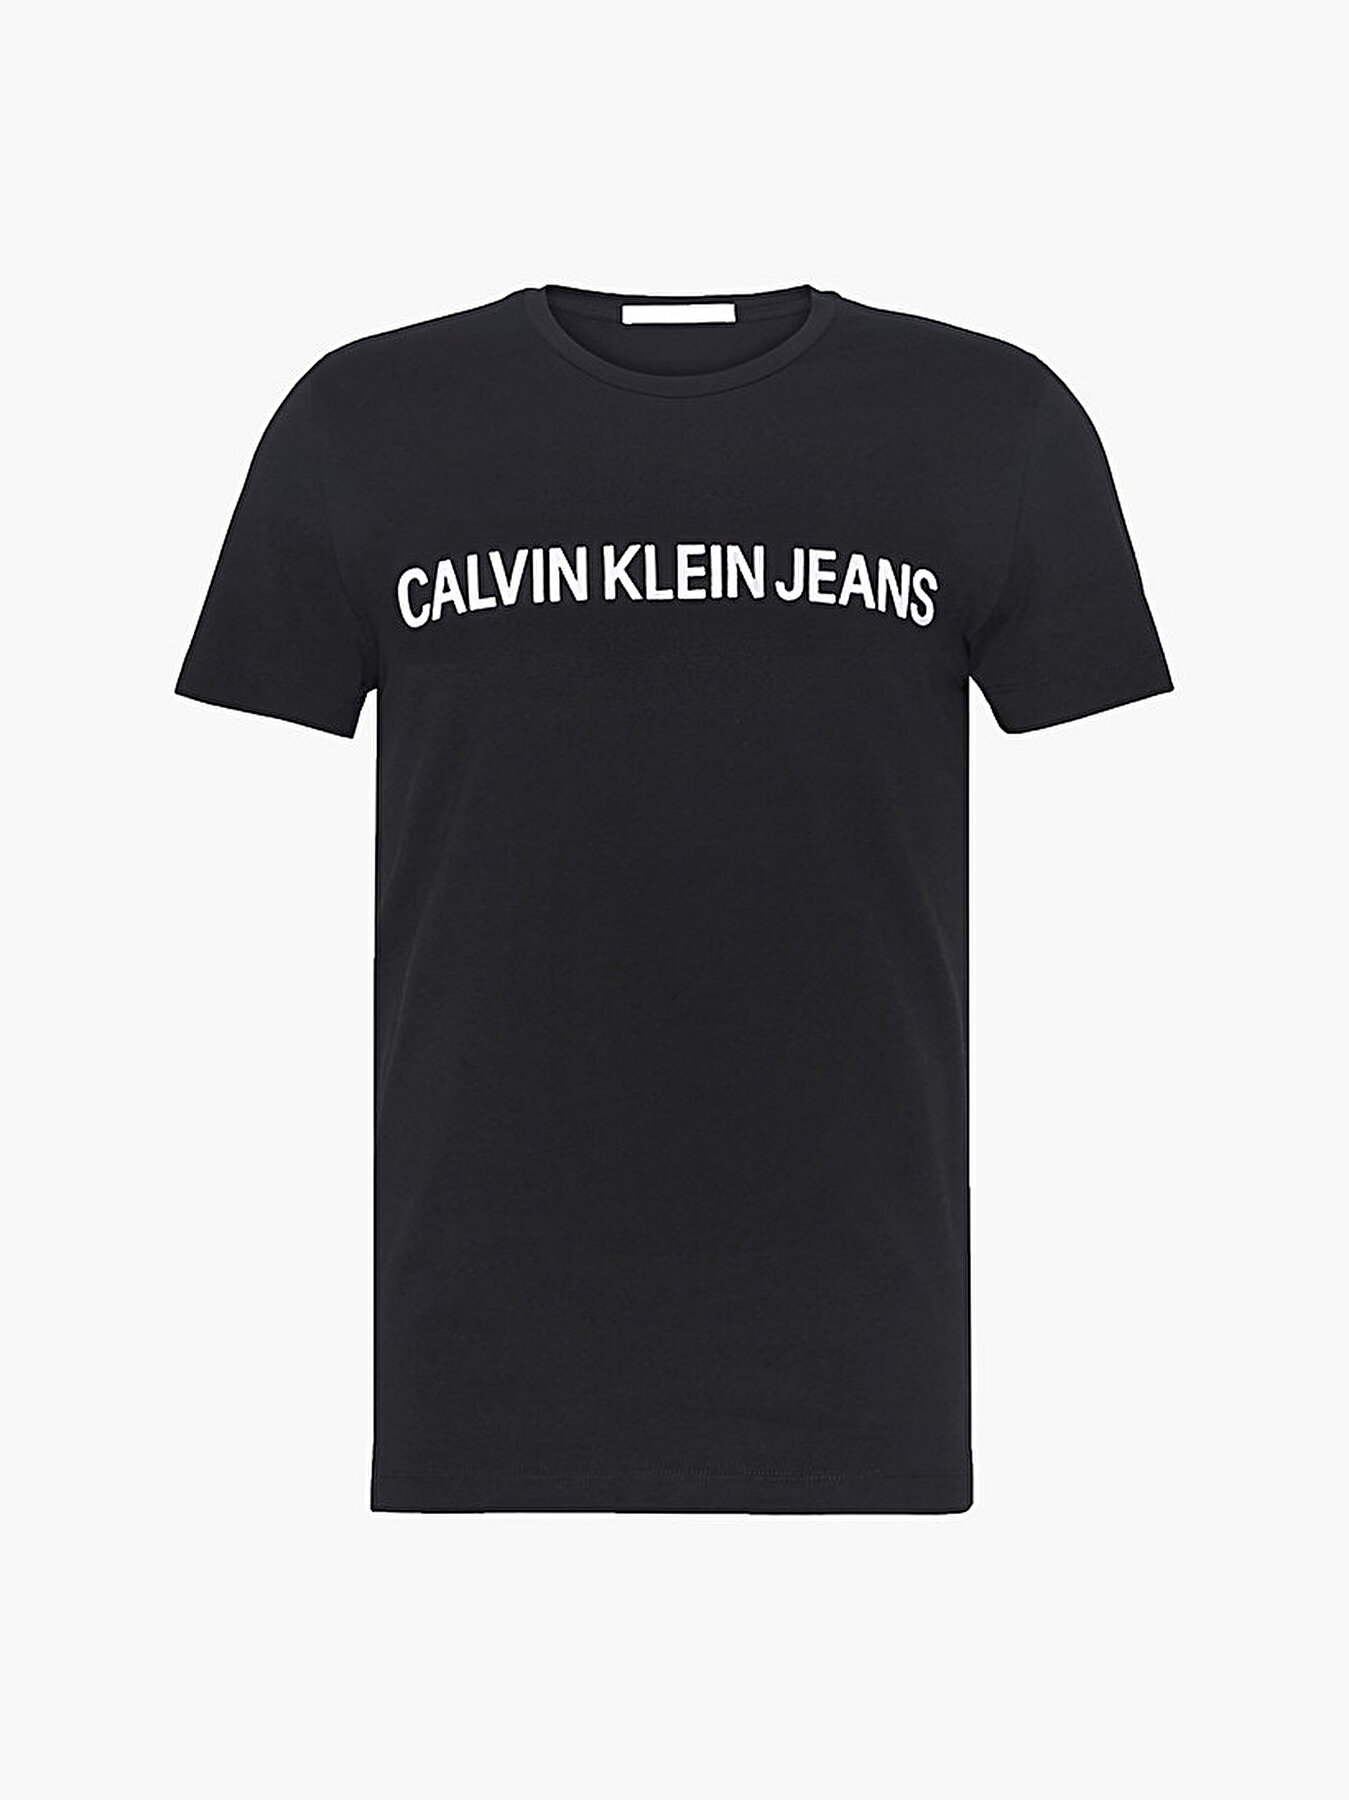 Футболки кельвин кляйн купить. Футболка Кельвин Кляйн джинс. Черная футболка Кельвин Кляйн. Футболка Кельвин Кляйн мужская черная. Calvin Klein Jeans футболка черная.